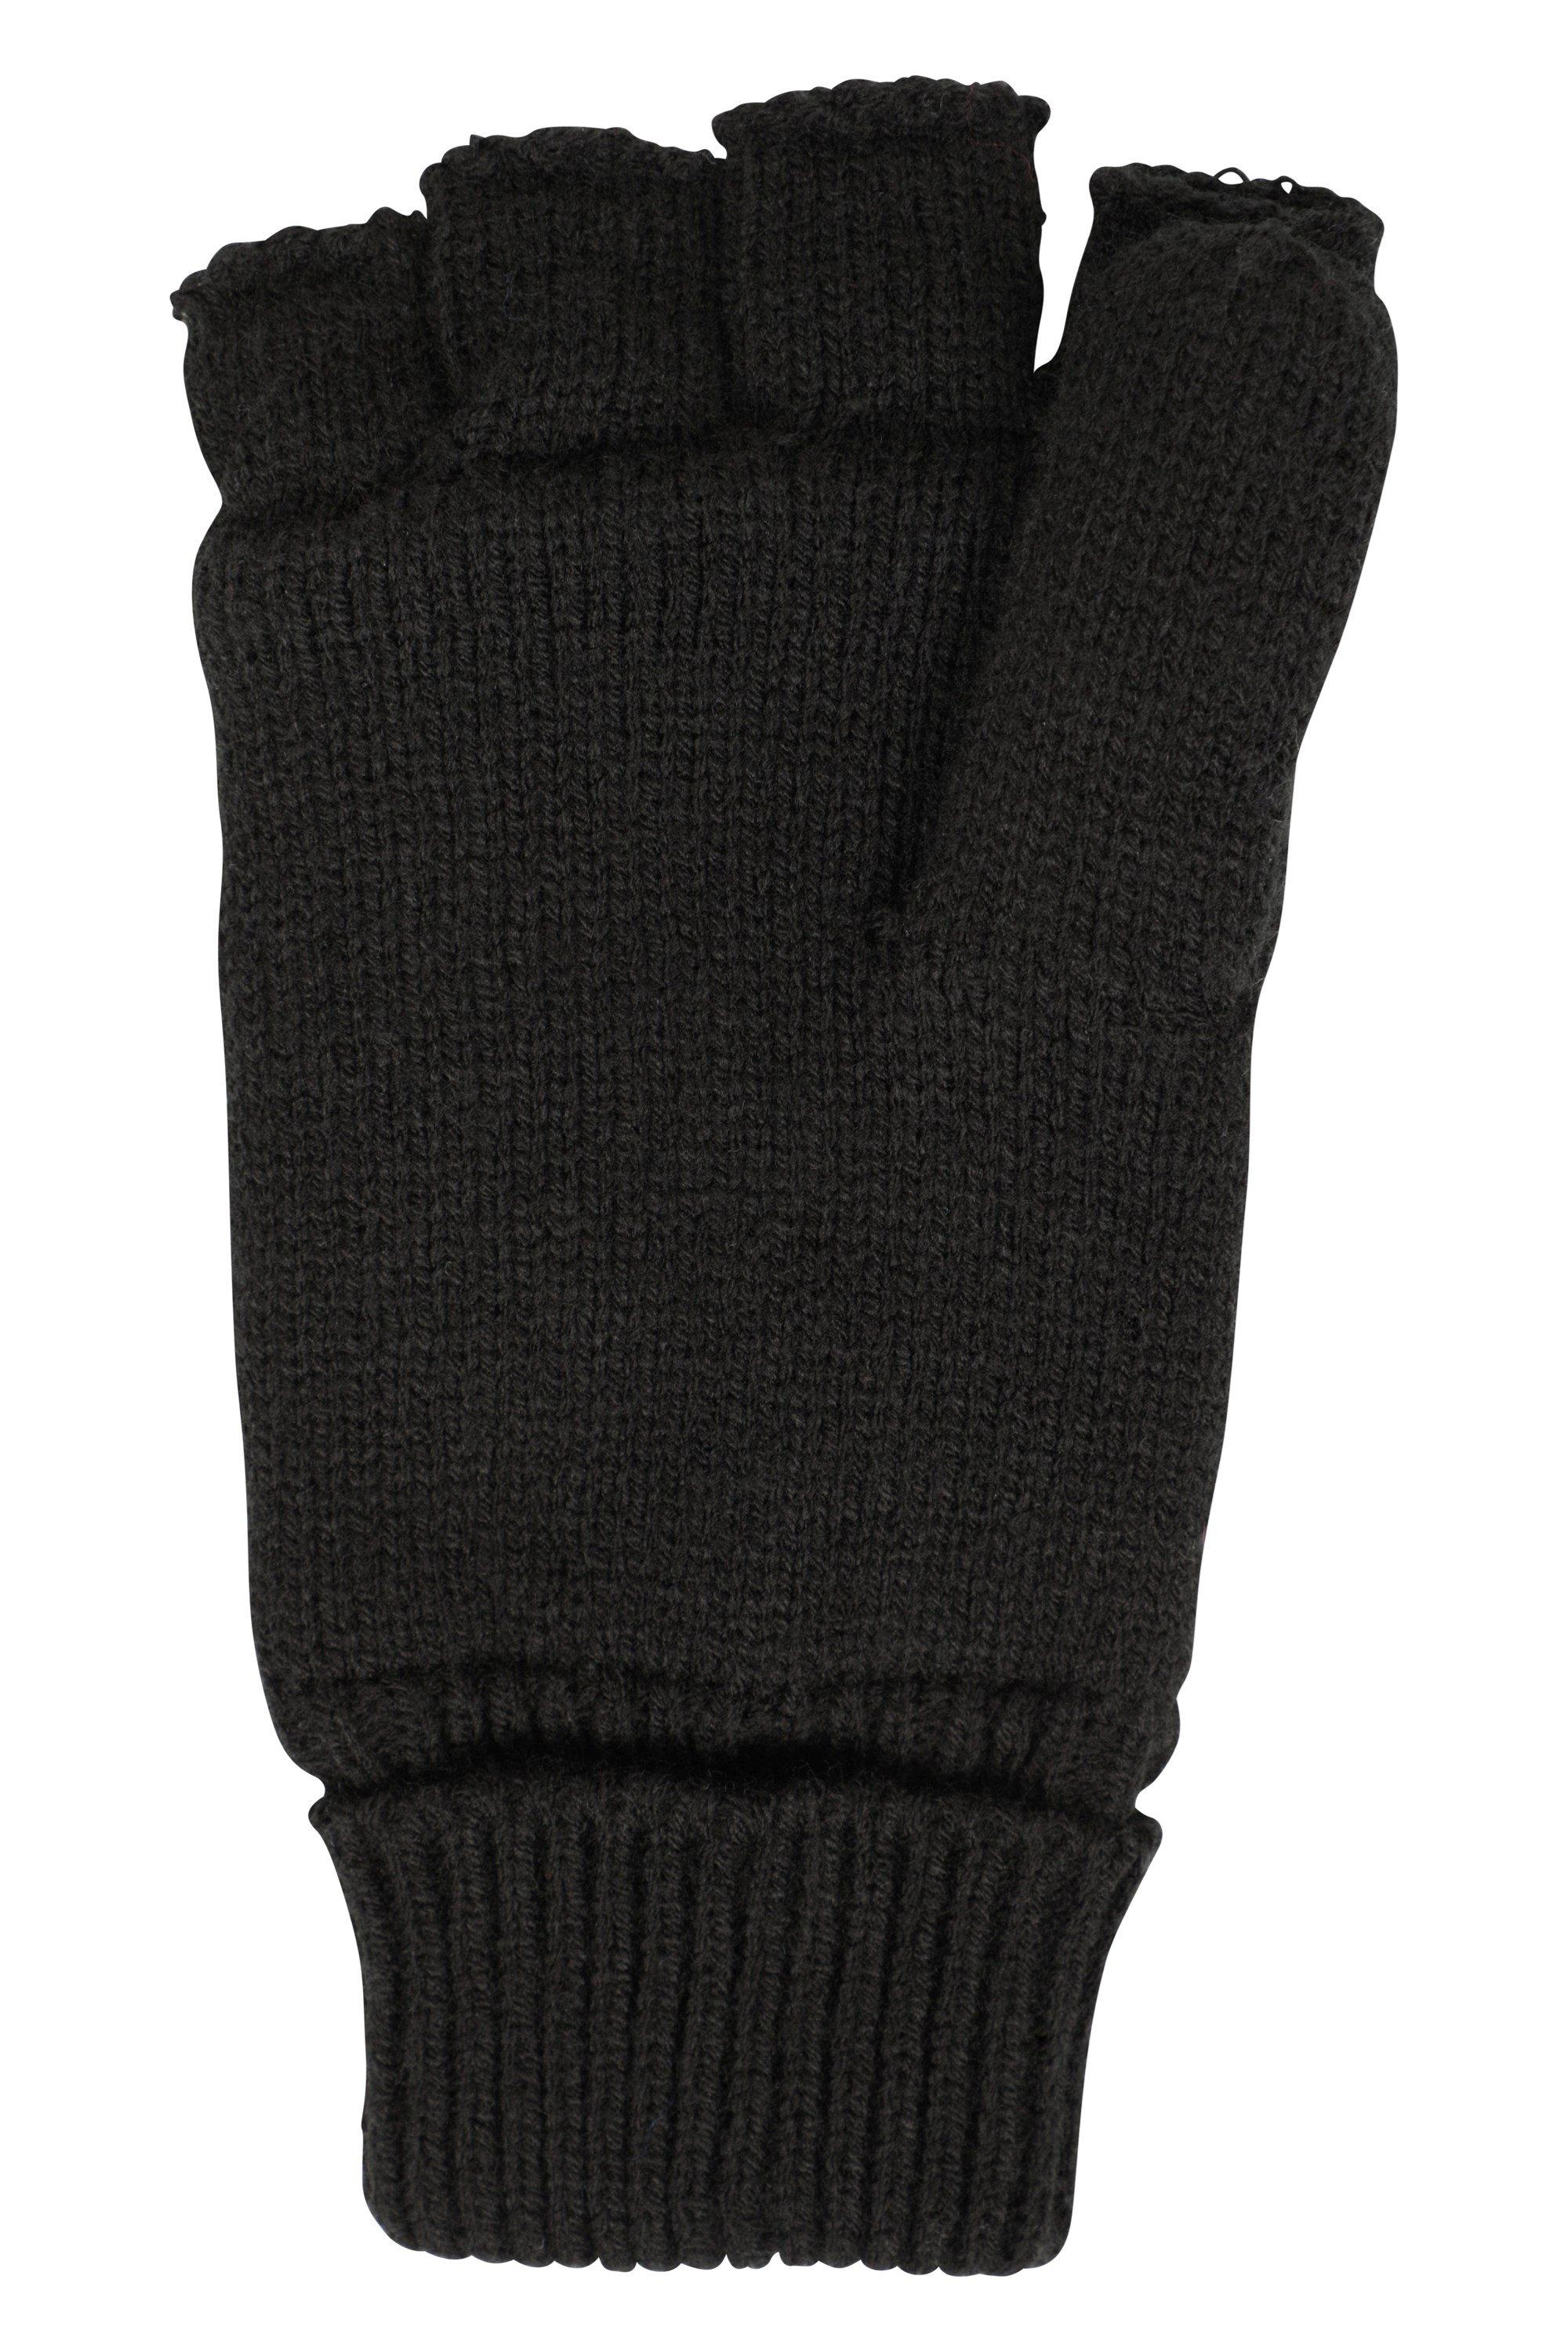 Вязаные перчатки без пальцев на флисовой подкладке Mountain Warehouse, черный вязаные носки гетры варежки и перчатки